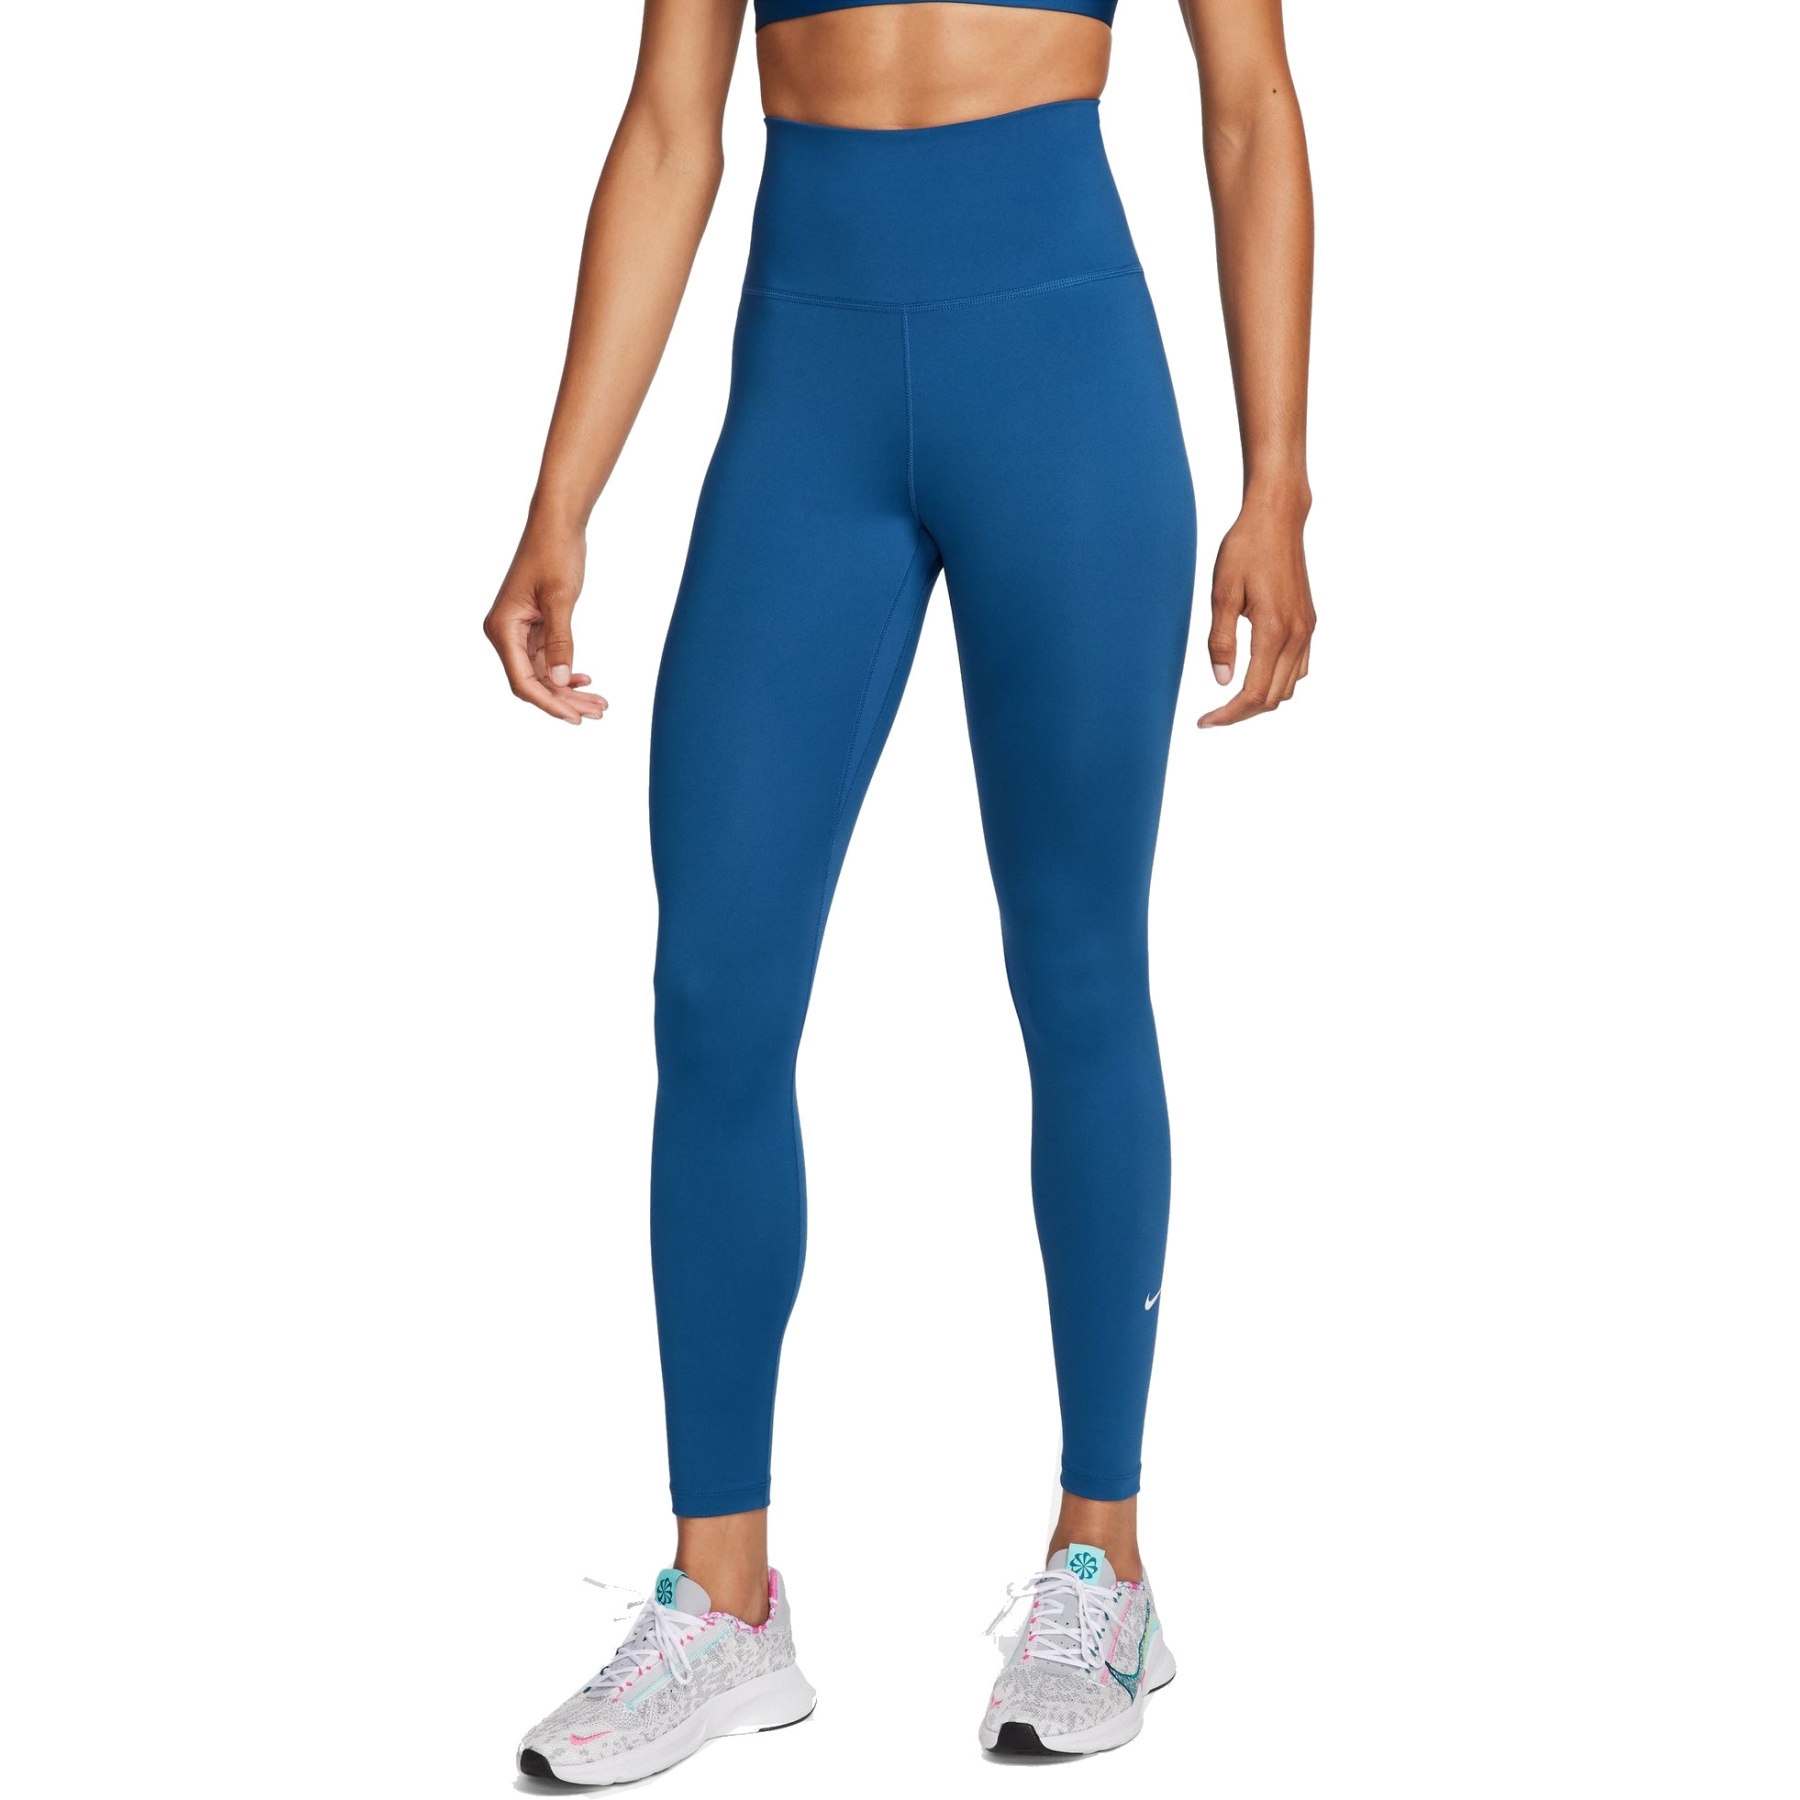 Produktbild von Nike Dri-FIT One Leggings mit hohem Bund Damen - court blue/white DM7278-476